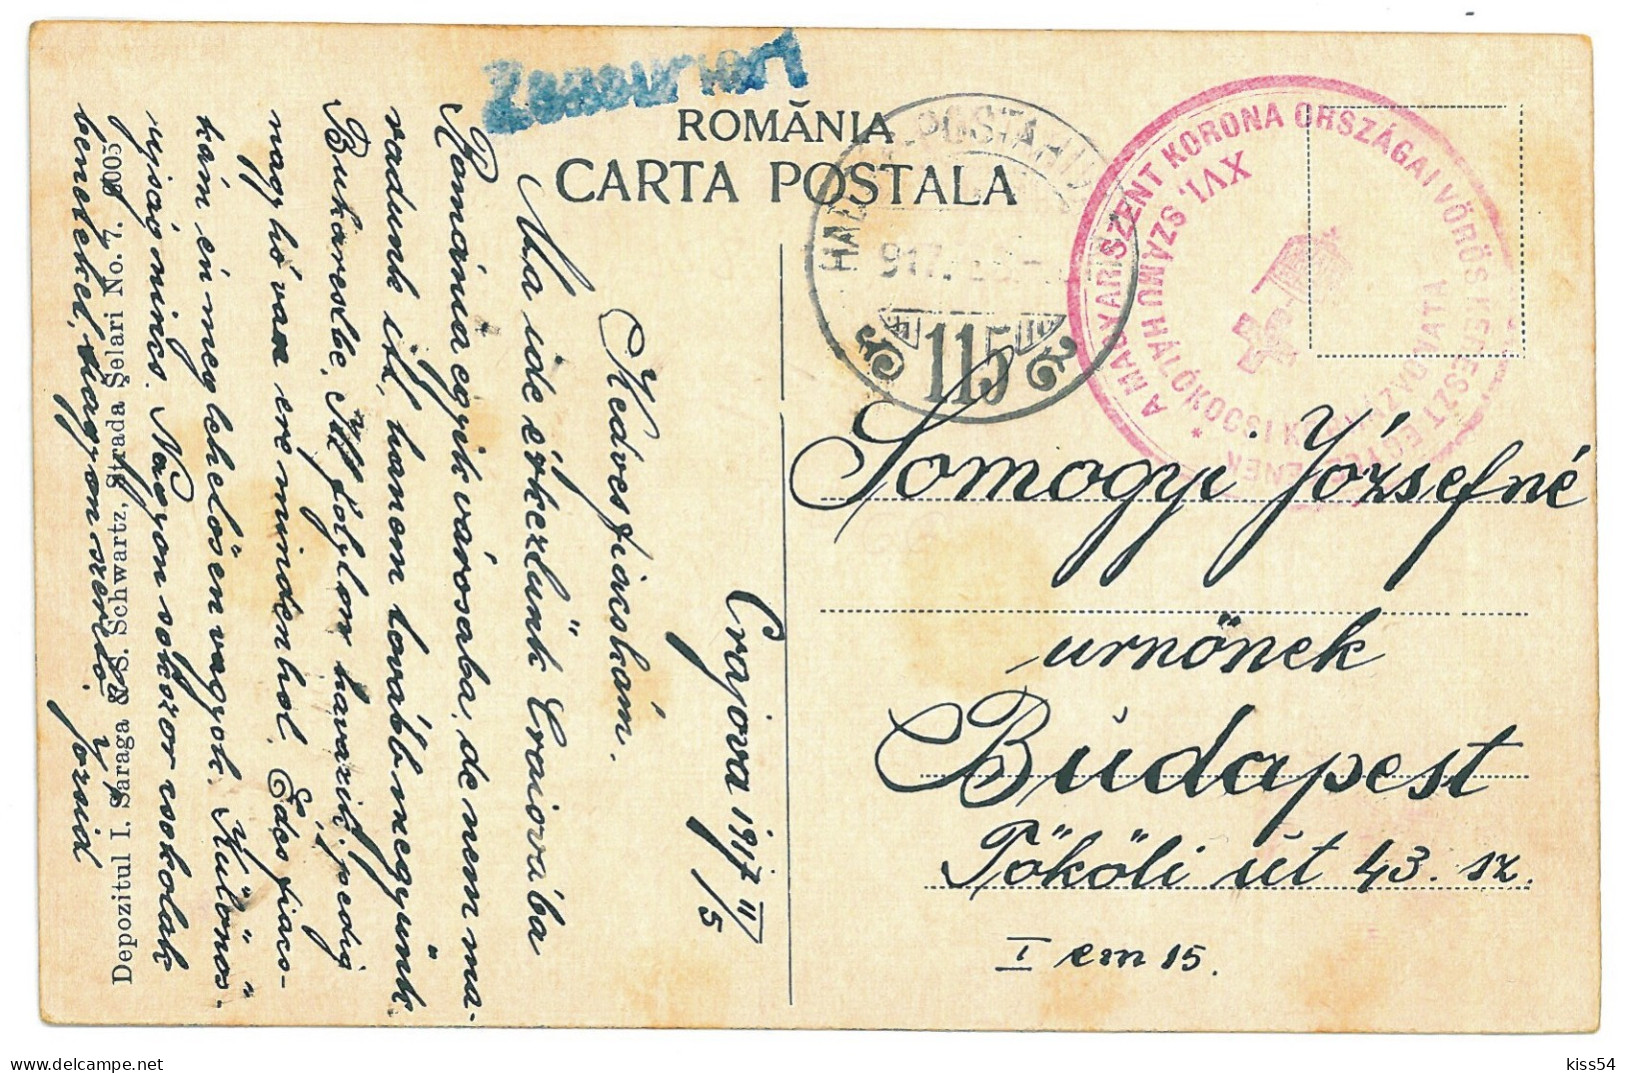 RO 999 - 20693 CRAIOVA, Street Stores, Romania - Old Postcard, CENSOR - Used - 1917 - Roemenië